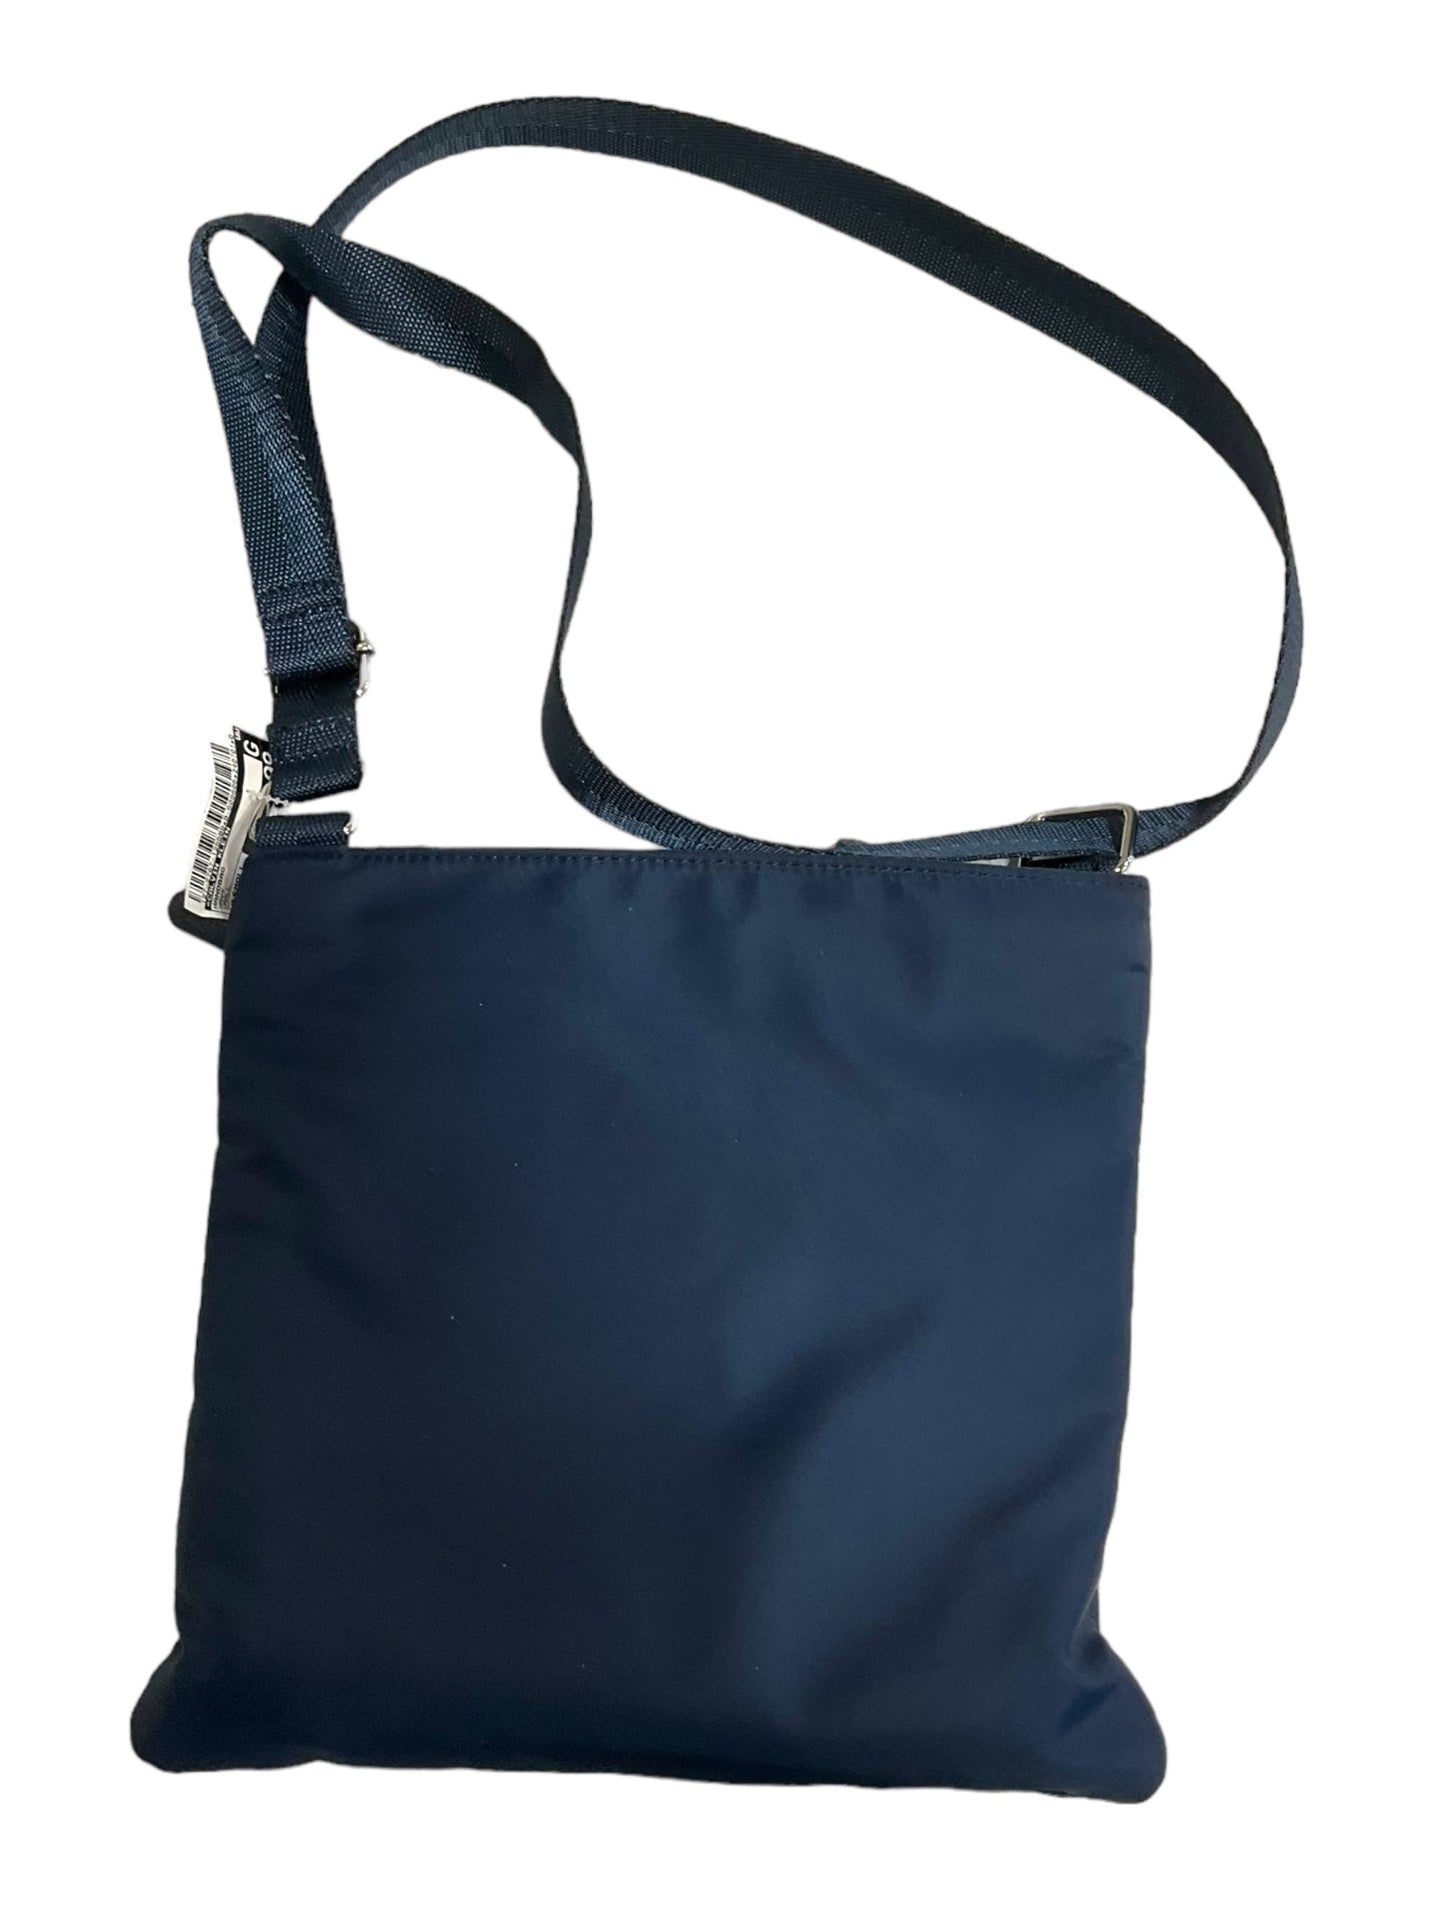 Handbag Calvin Klein, Size Small